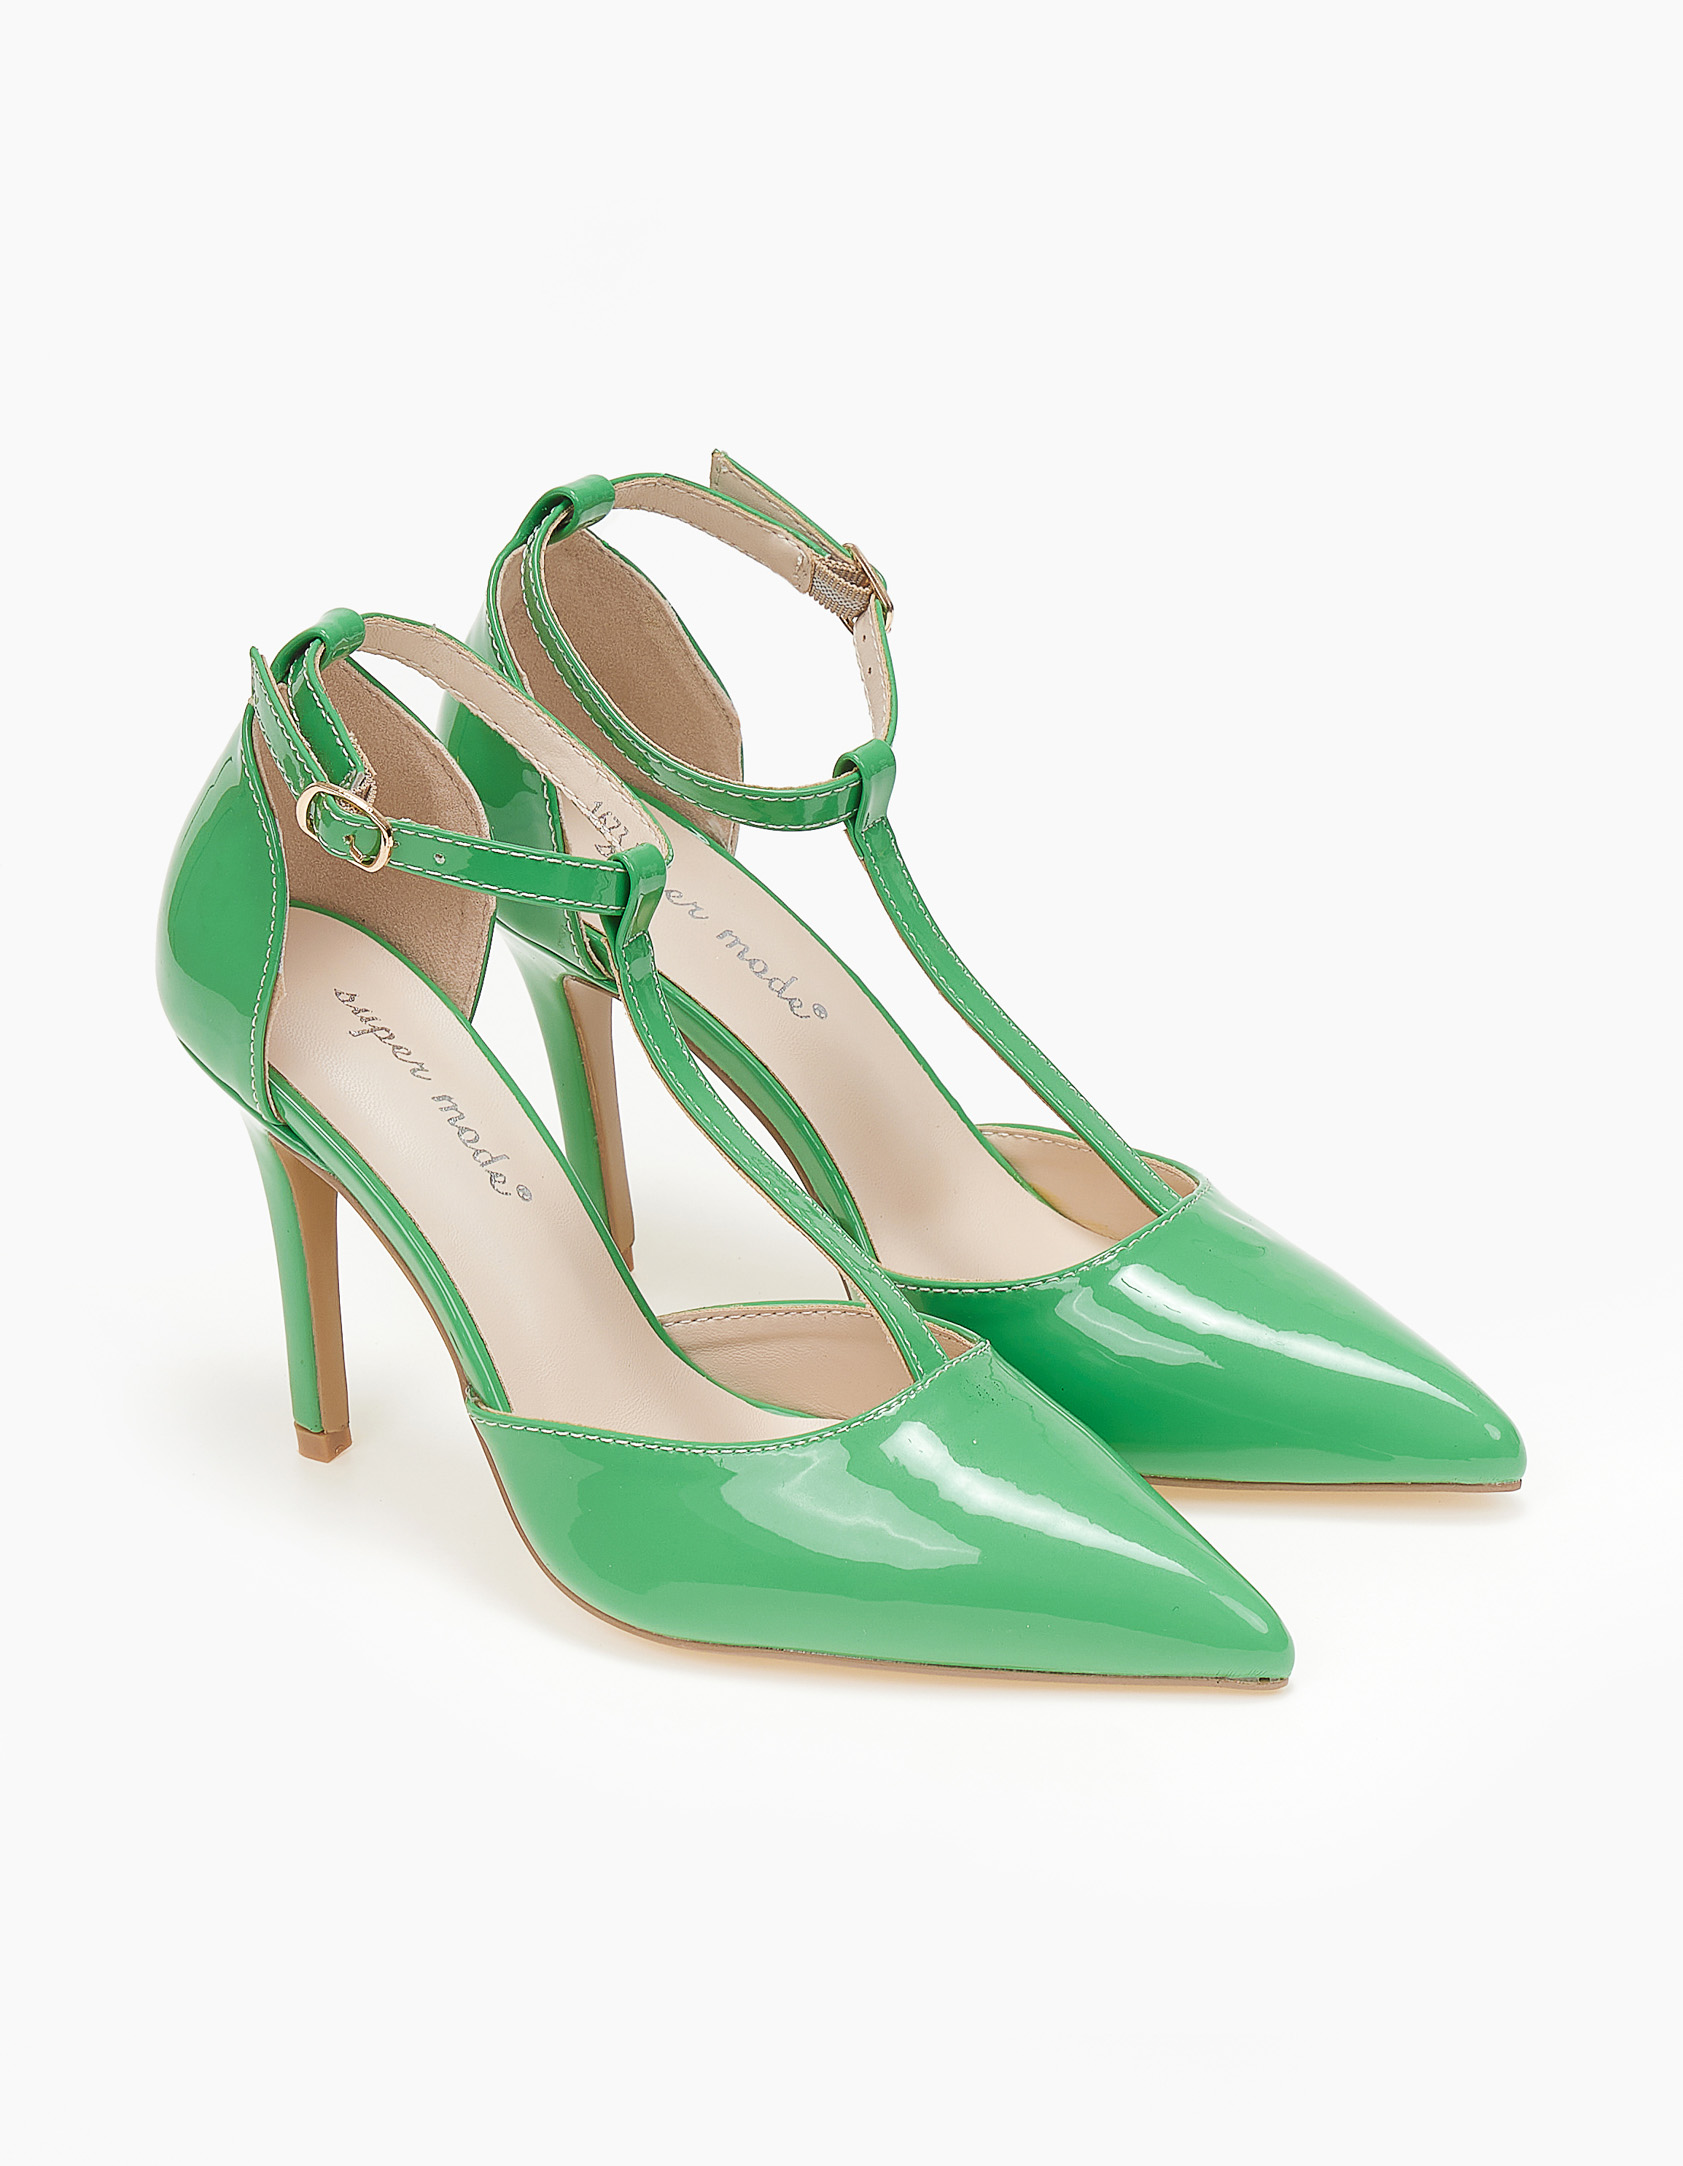 Παπούτσια > Γόβες Γυναικείες γόβες - Πράσινο